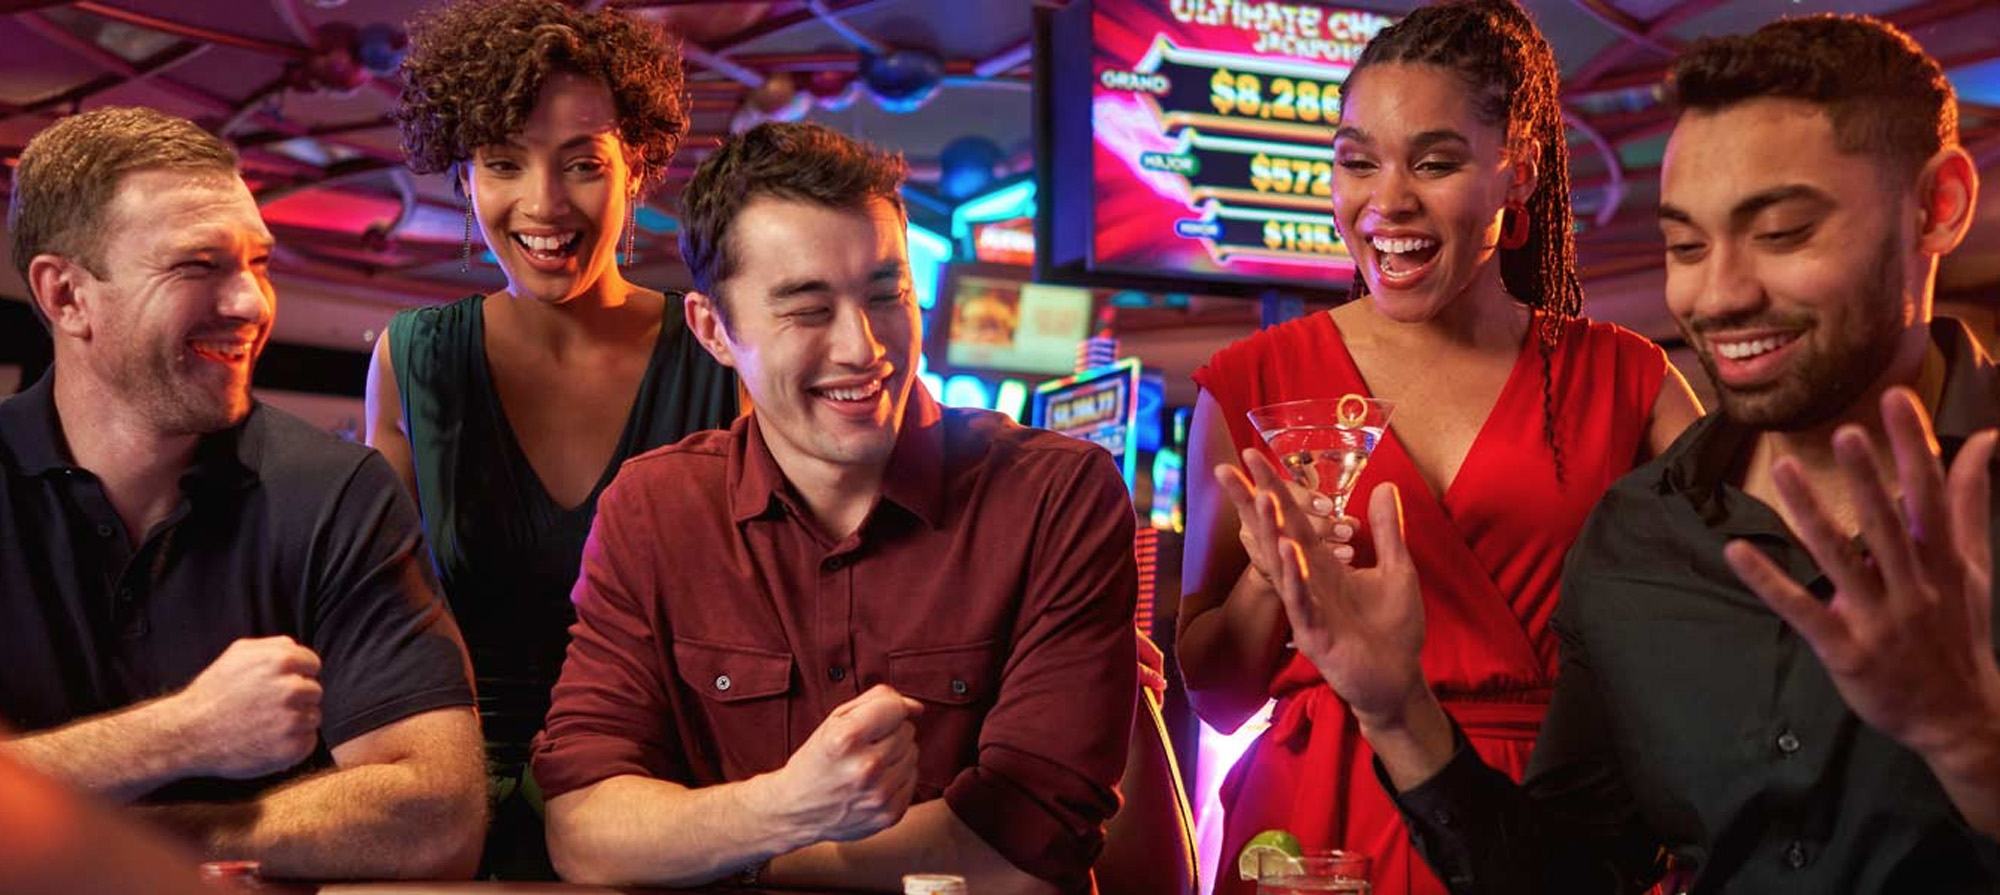 Potawatomi Casino & Hotel table gambling